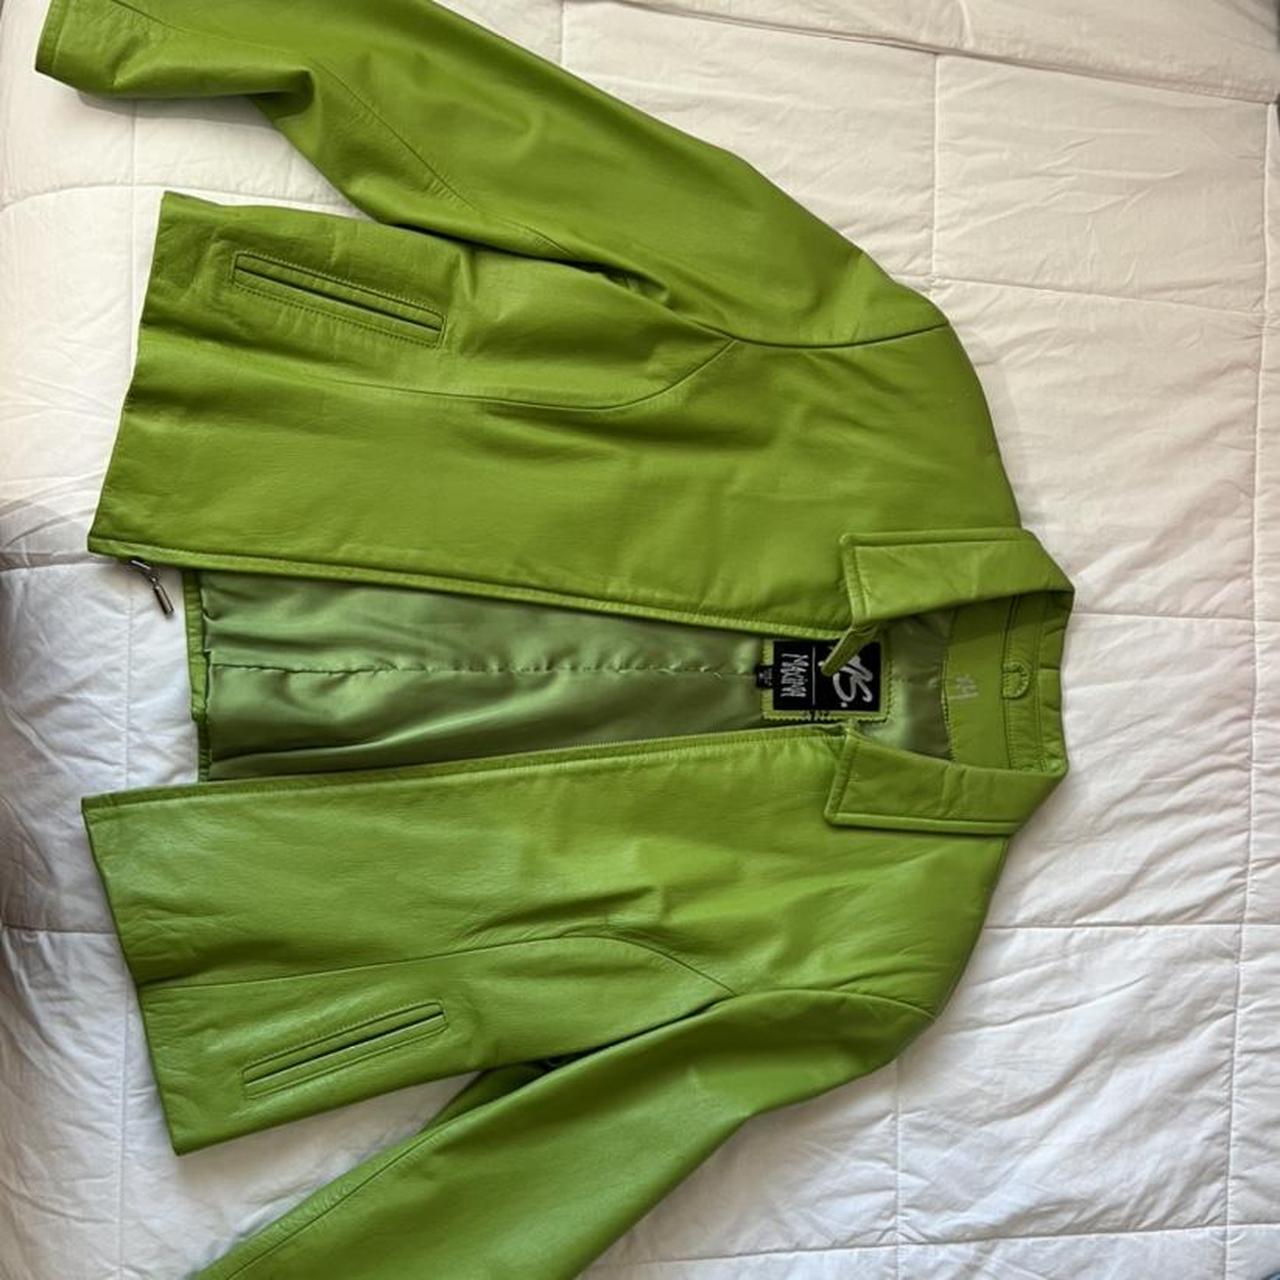 Max Studio Women's Green Jacket | Depop